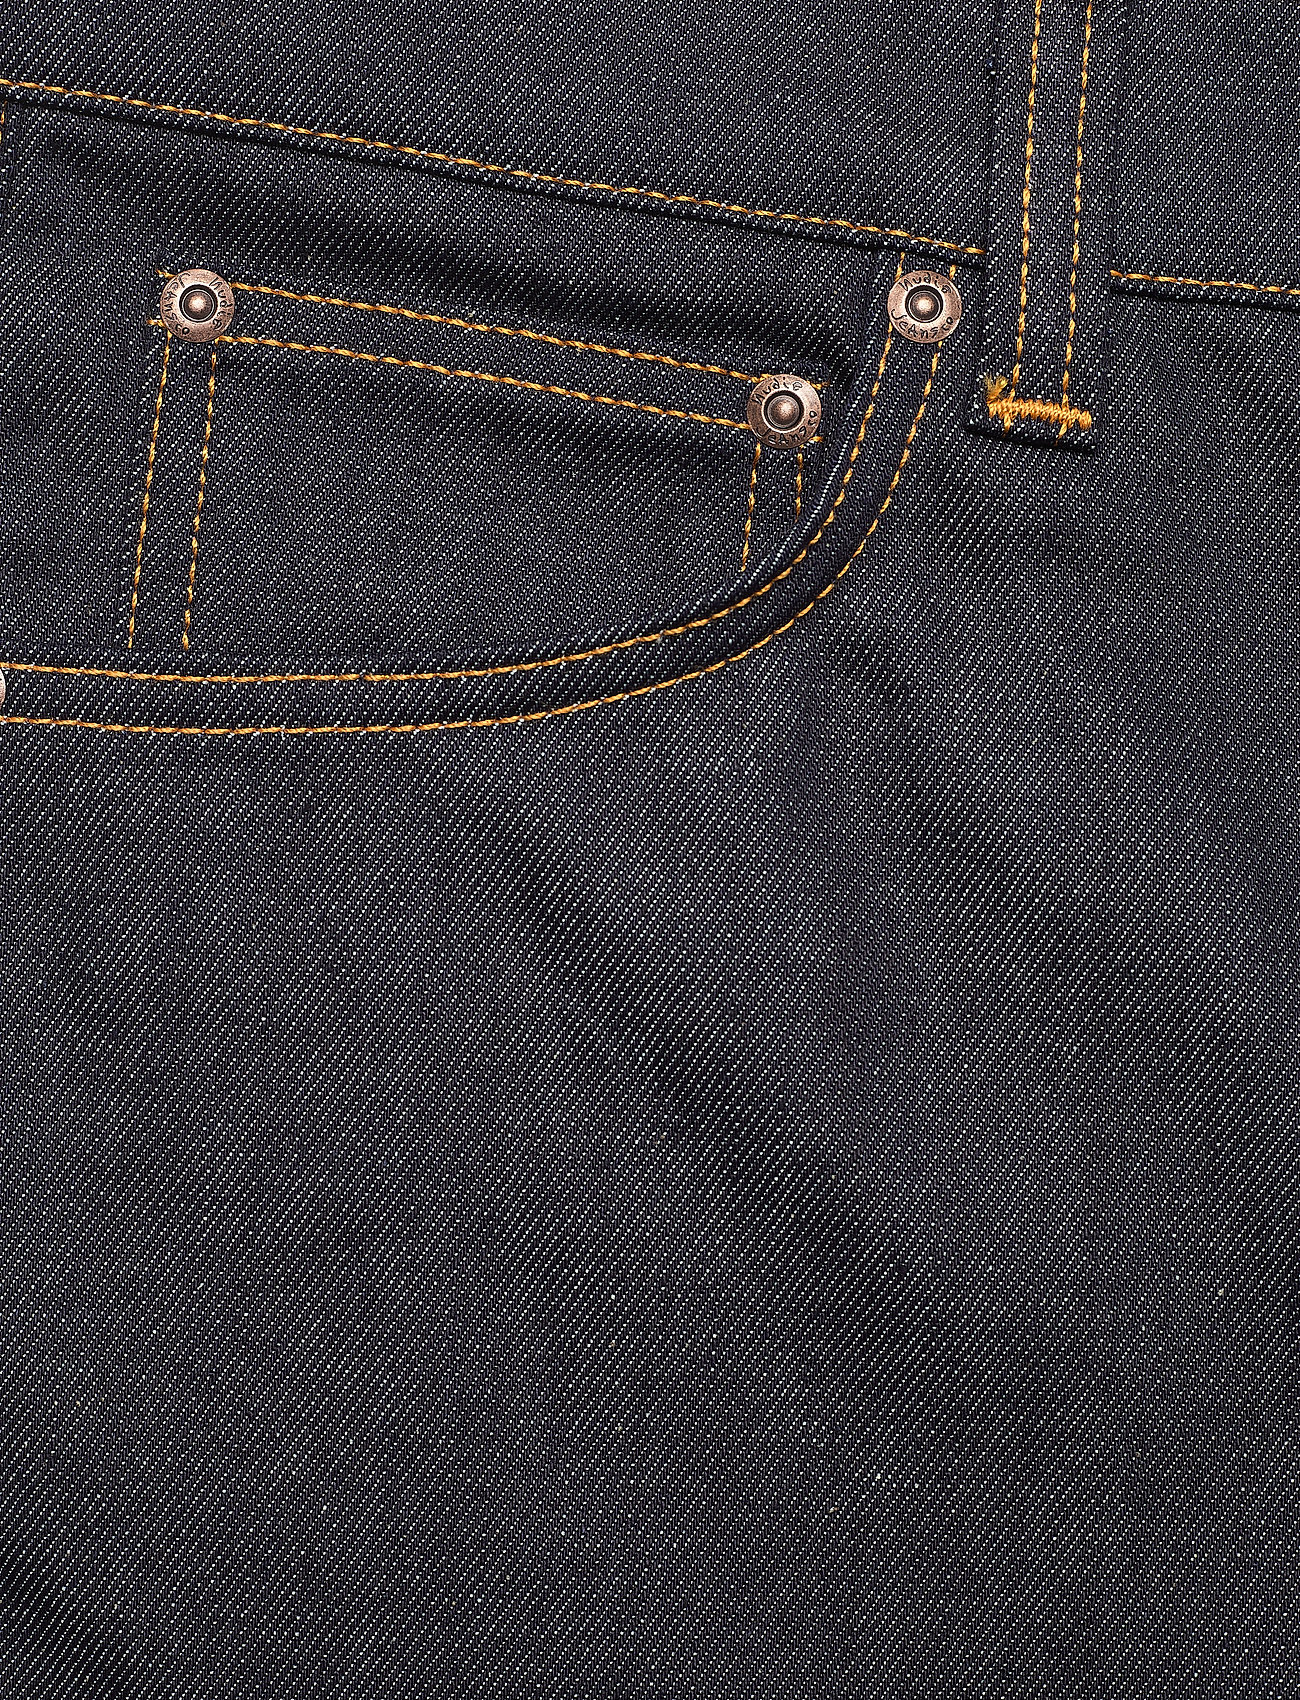 Nudie Jeans - Lean Dean - chemises basiques - dry 16 dips - 5